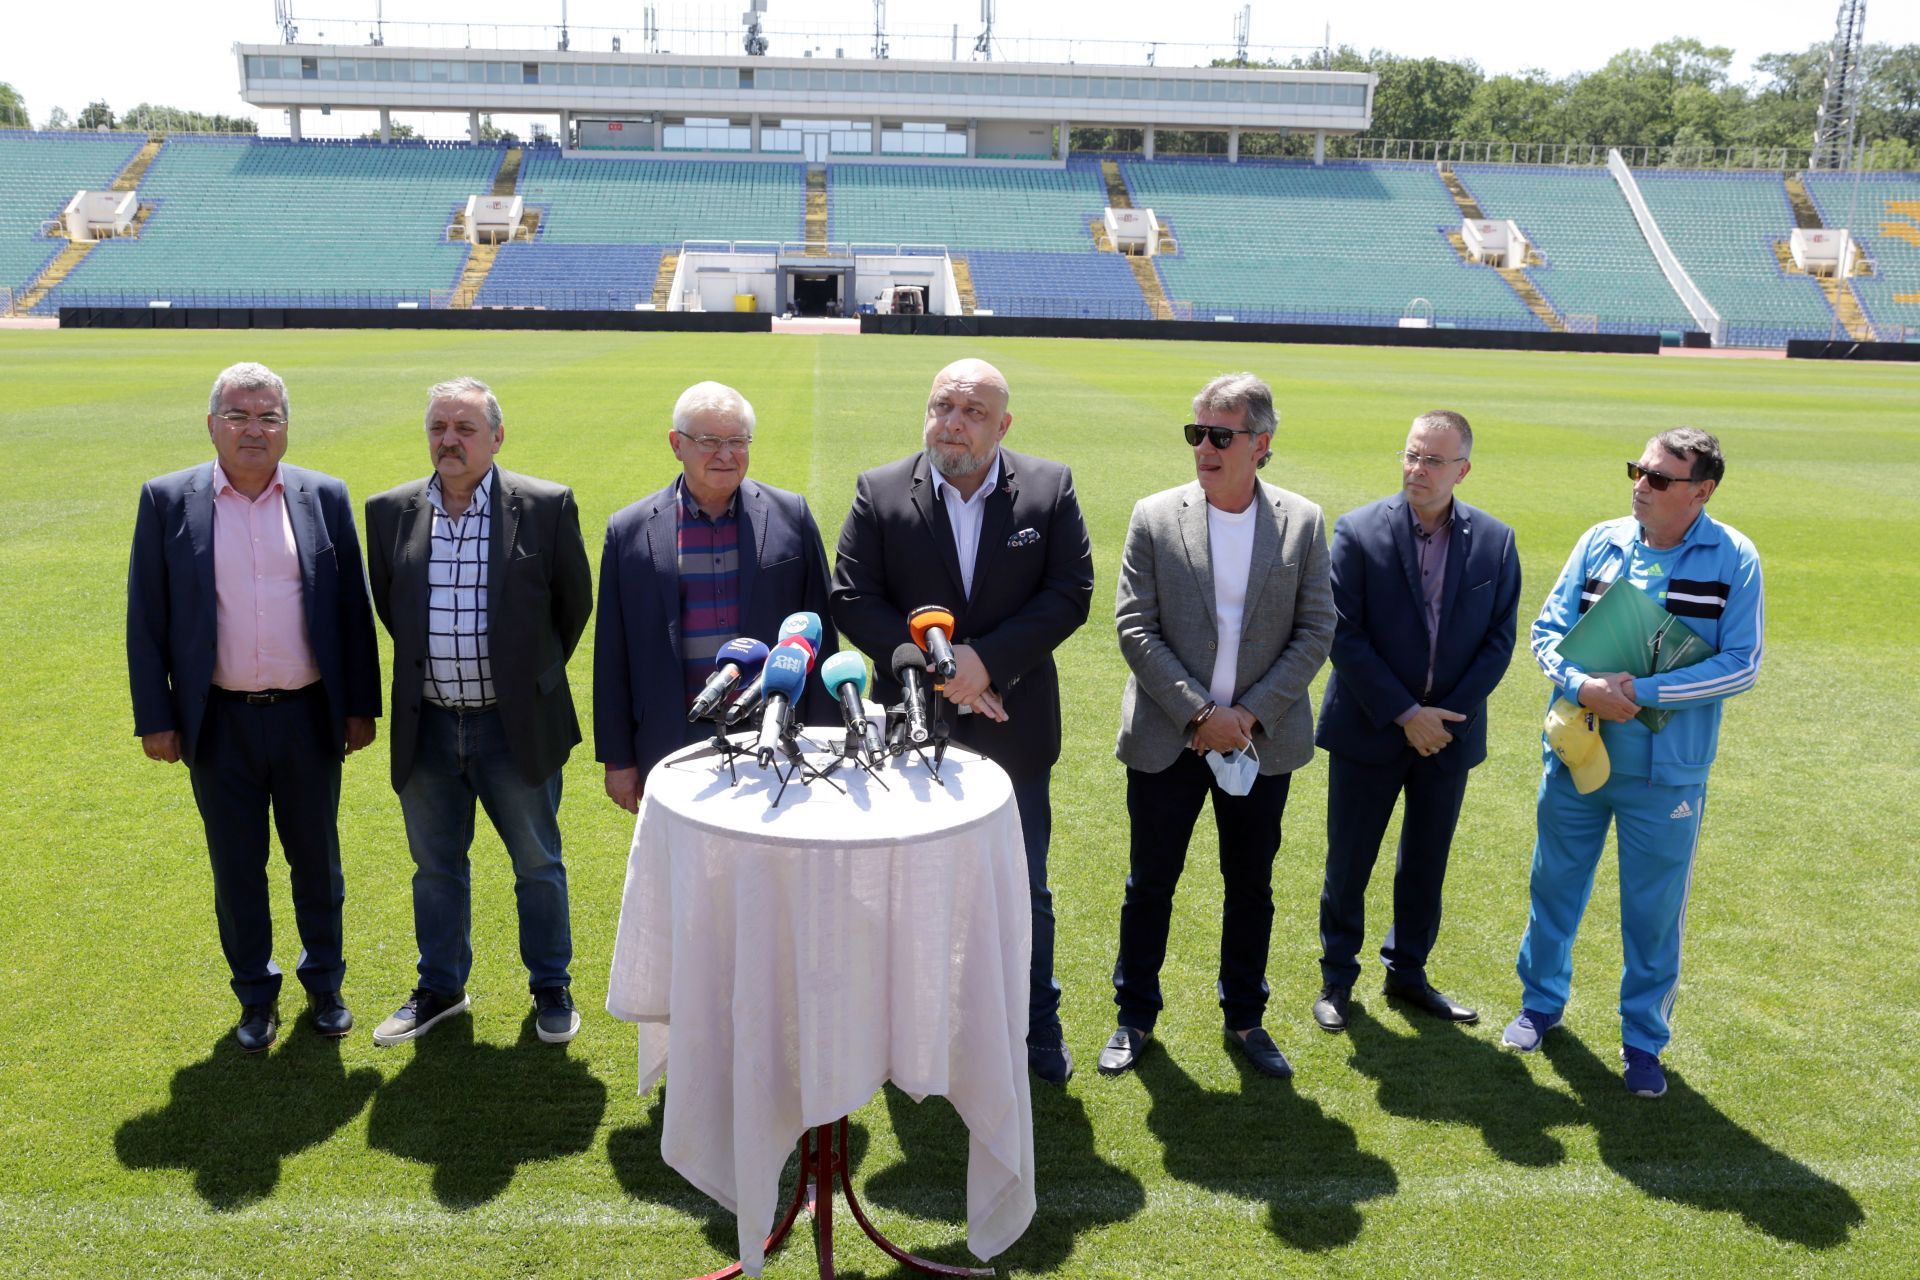 Националният оперативен щаб, министрите Кирил Ананиев и Красен Кралев, както и представители на БФС създадоха обща организация за безопасност на финала за Купата на България по футбол